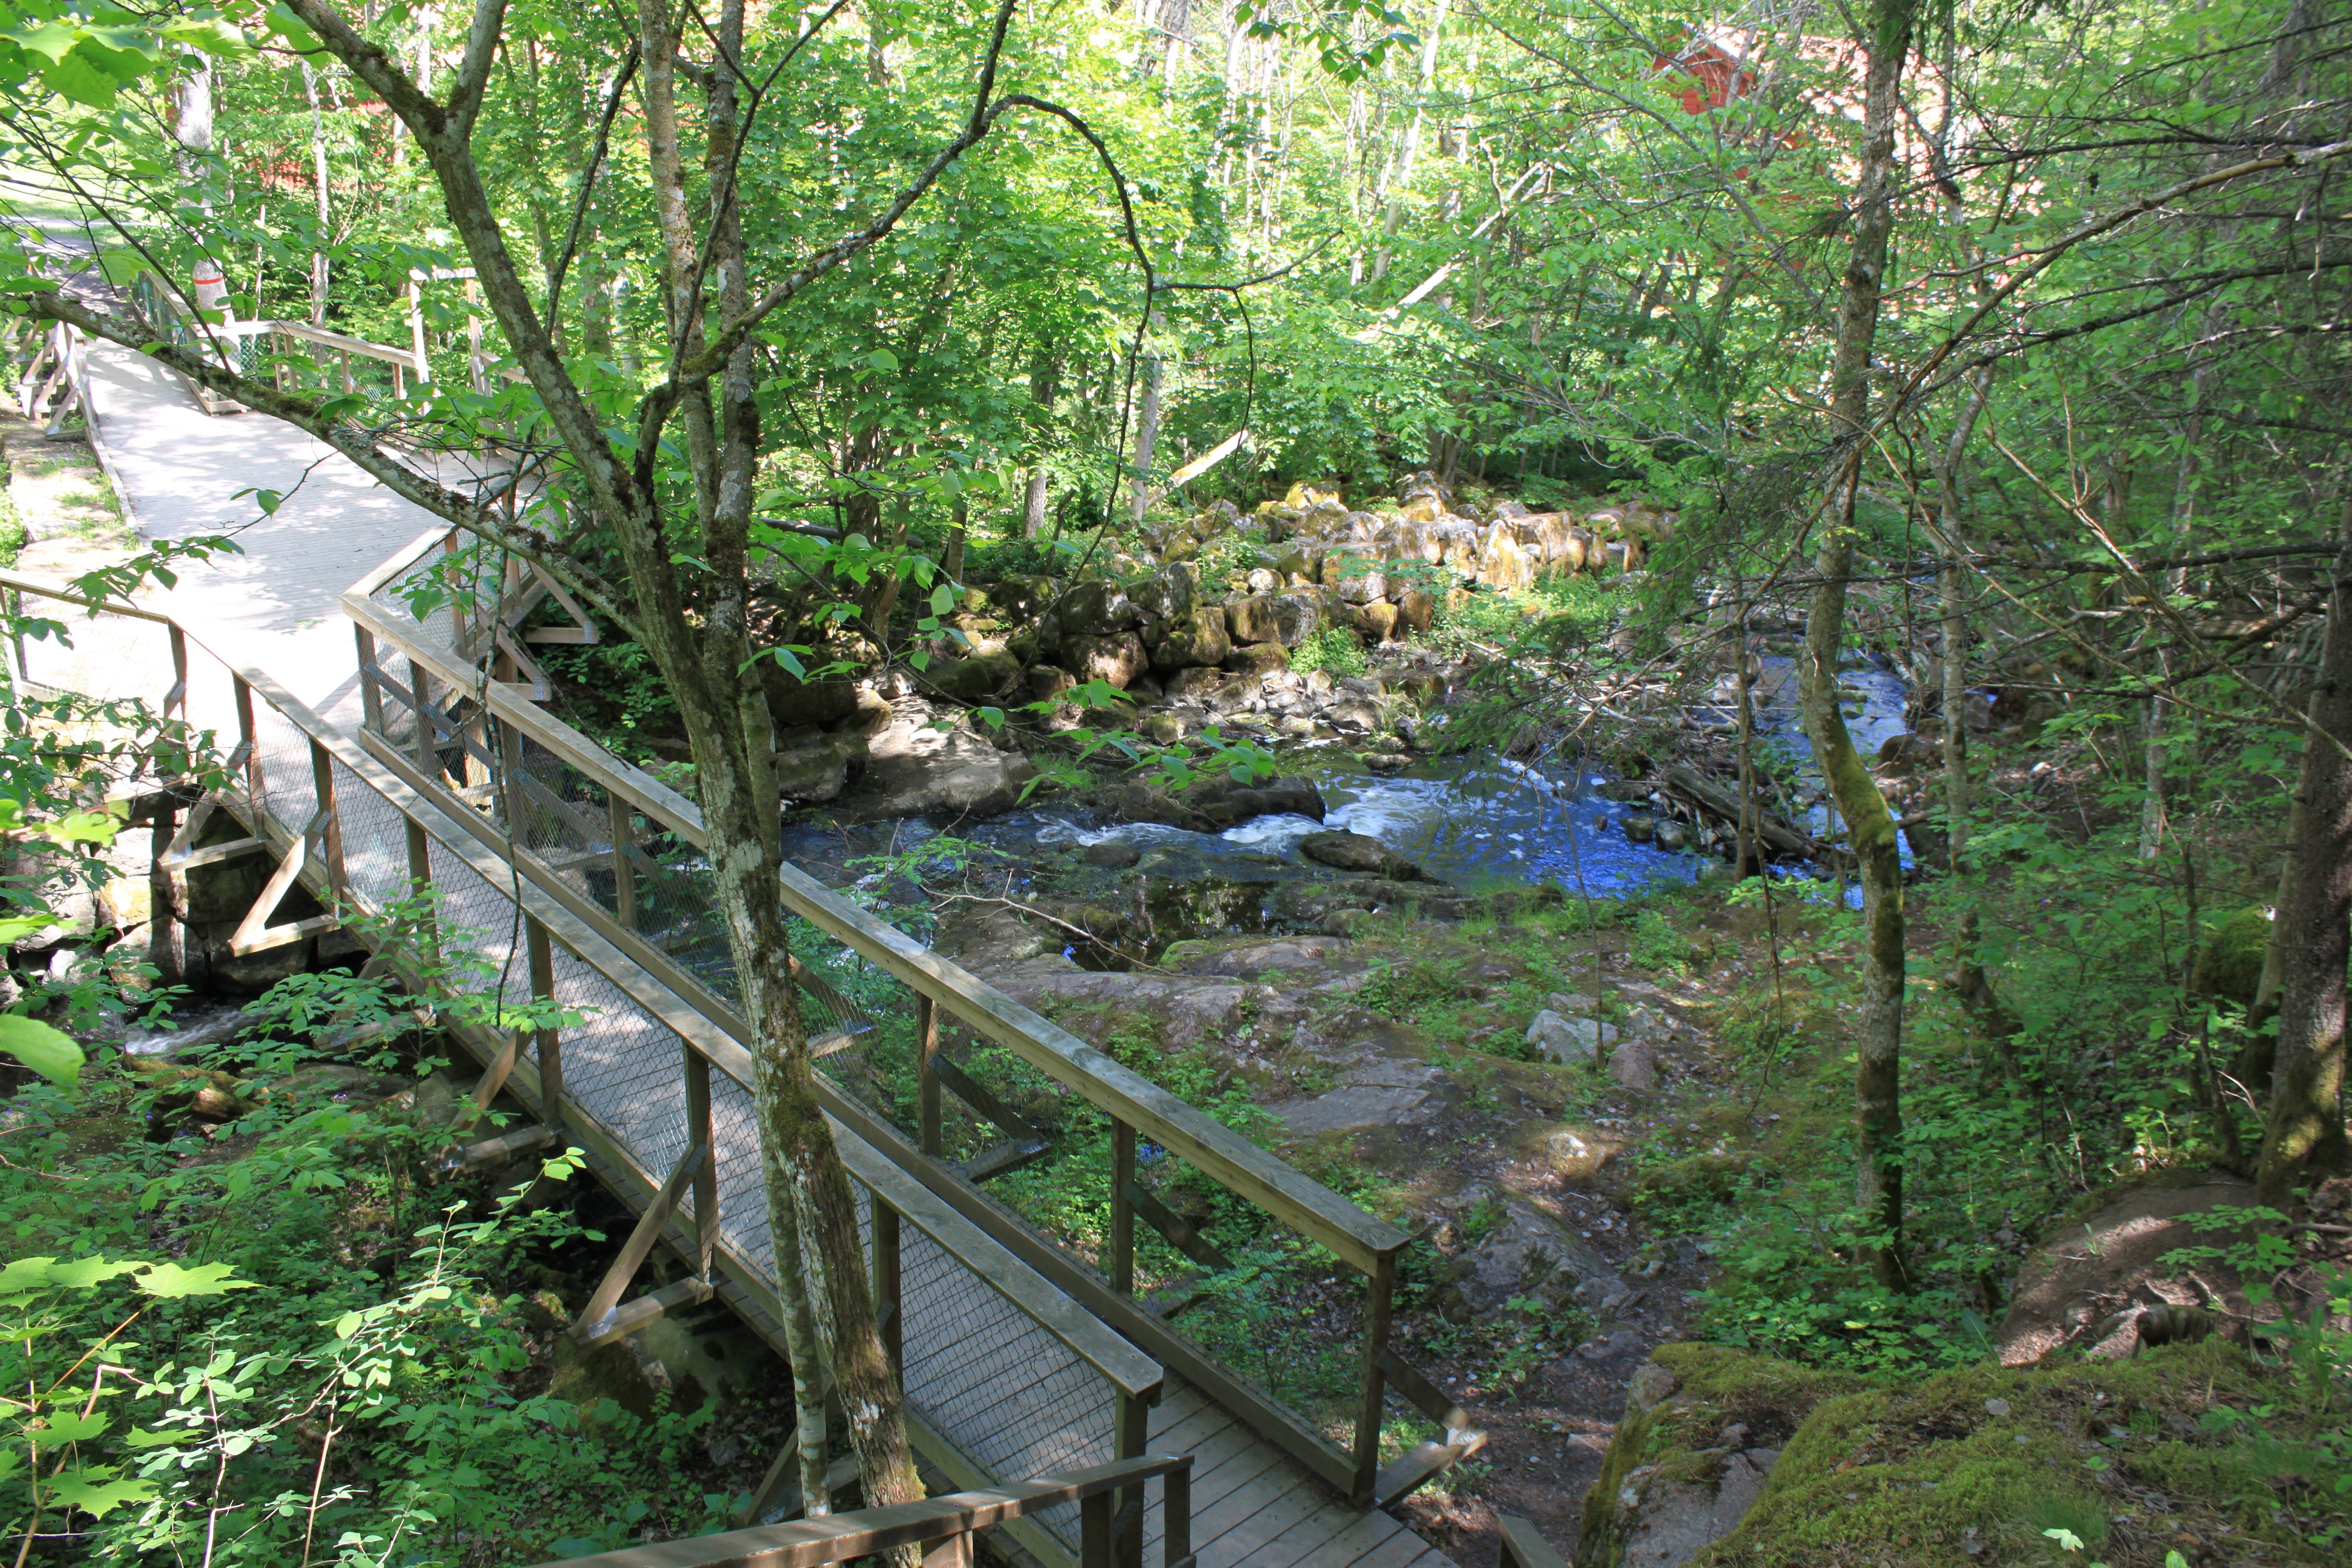 En bred träspång med handräcken leder fram till en bro. Bron går över en ravin med stenar och vatten. Runtom växer många buskar och träd.